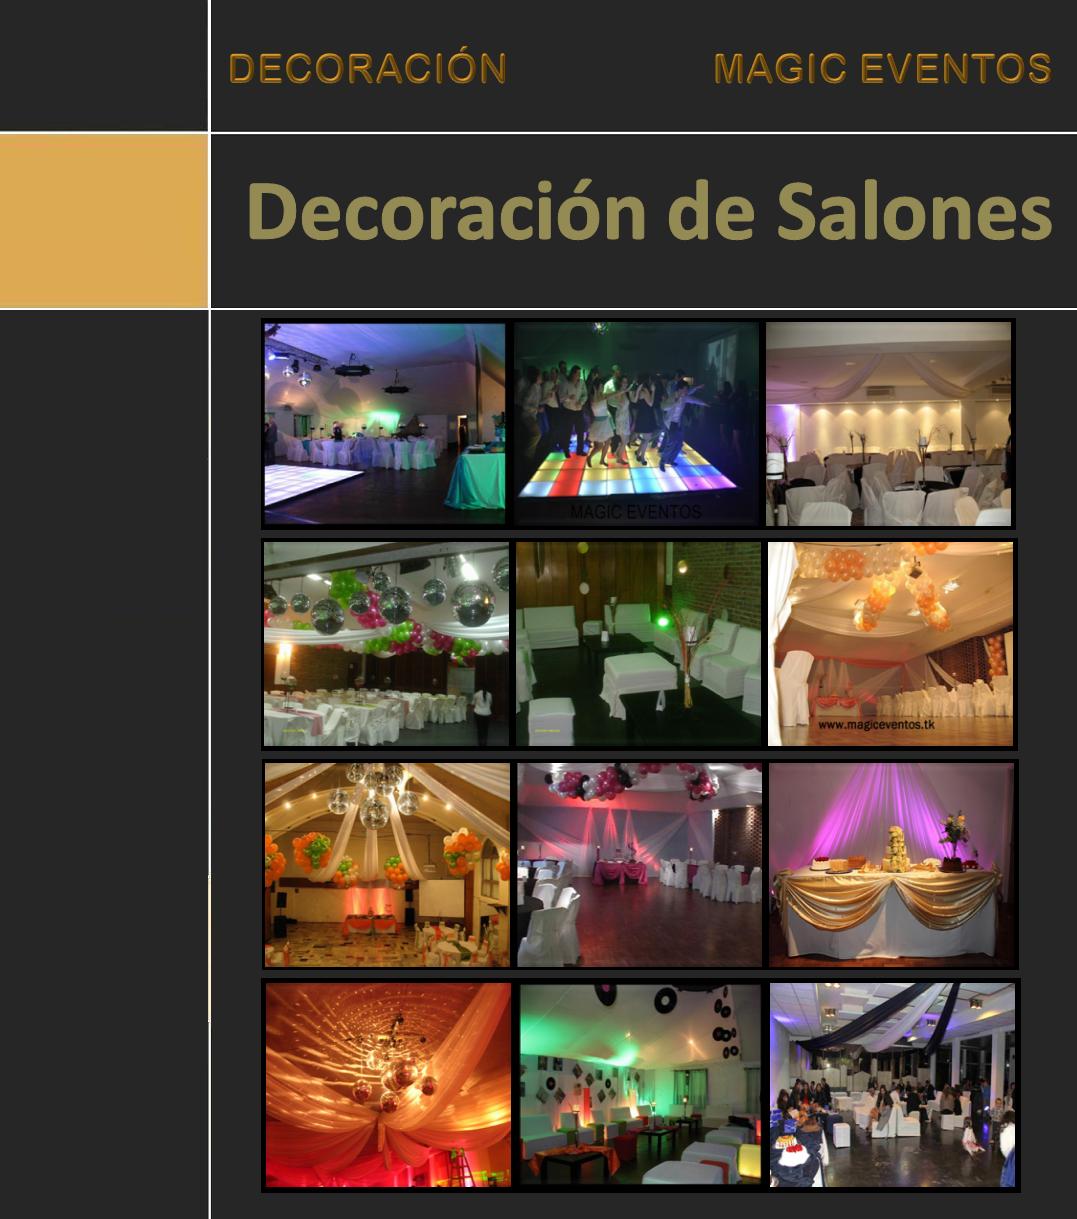 plantilla_decoracion_salones_nuevo_magic_eventos_2013.jpg